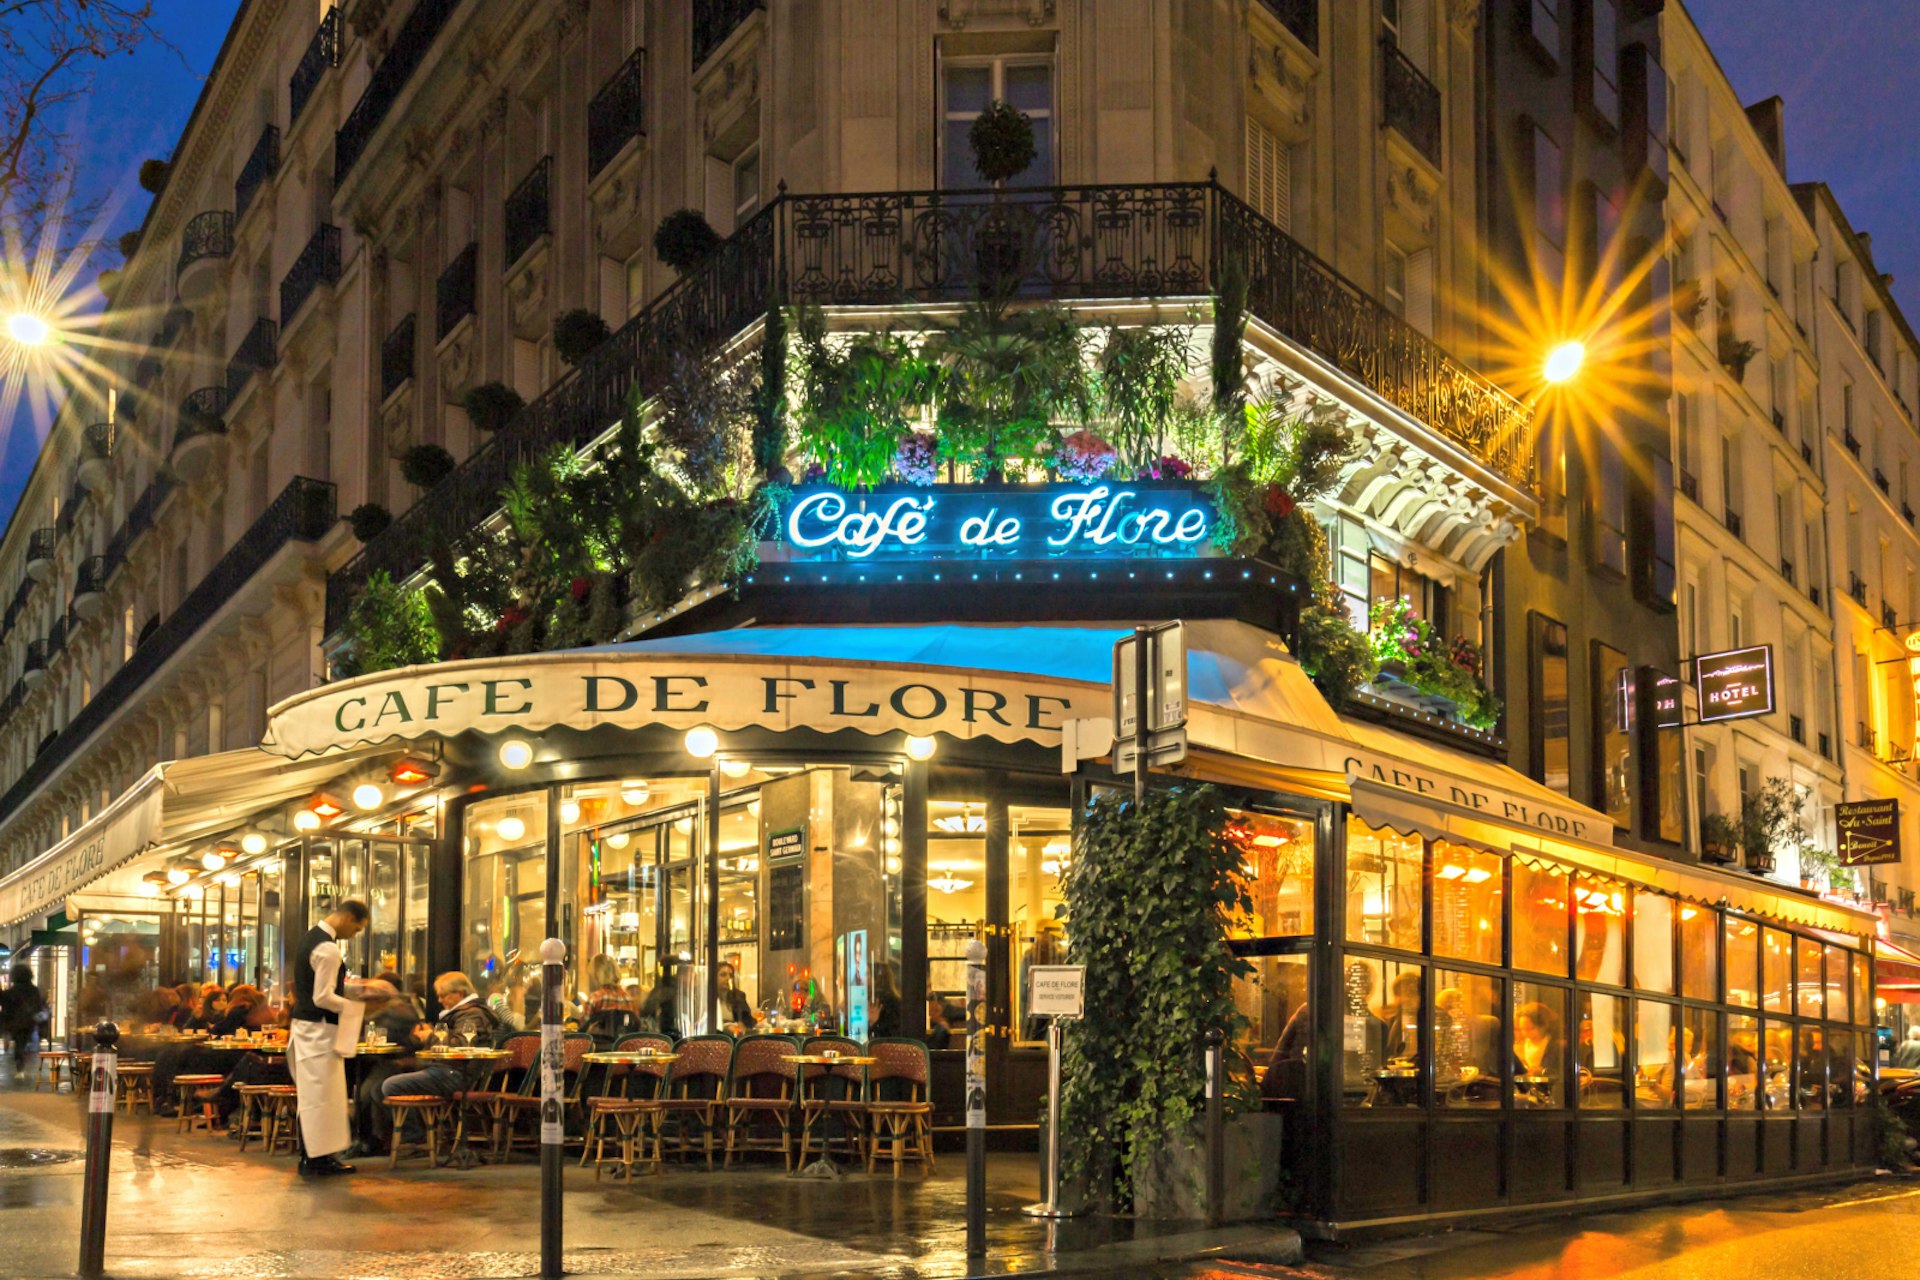 Café de Flore in Paris lit up at night